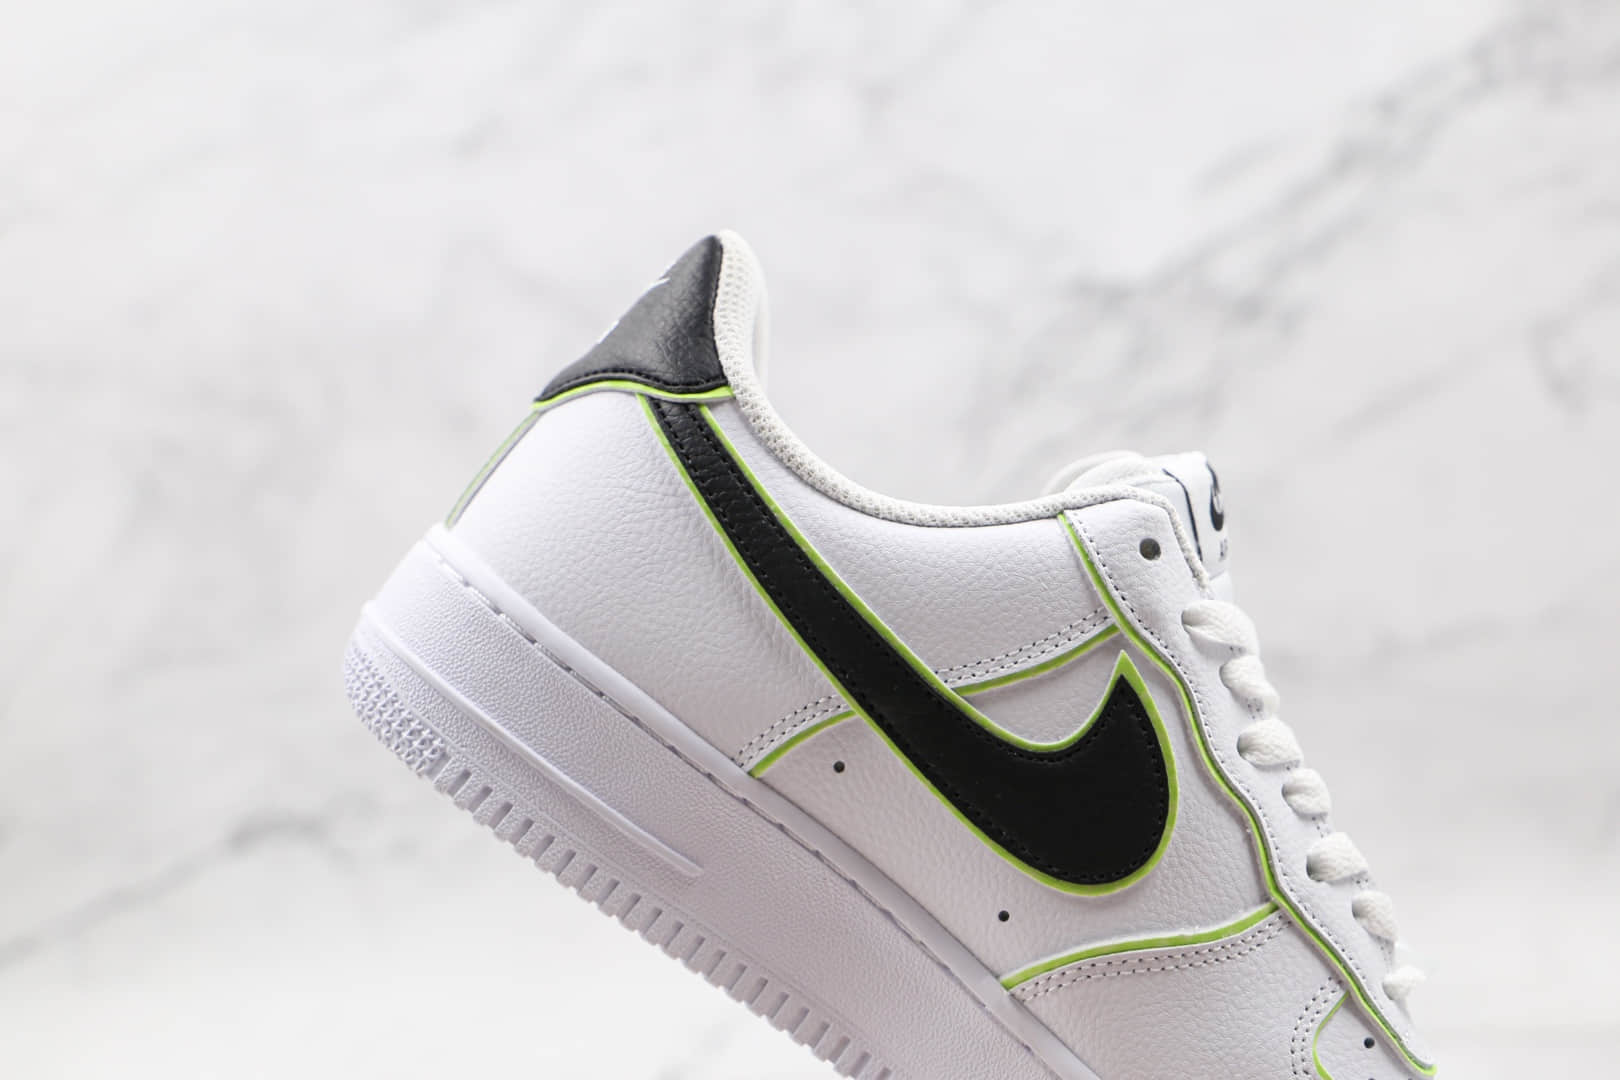 耐克Nike AIR FMRCE 1低帮空军一号白黑绿色板鞋 CW2288-304 - 耐克空军一号白黑绿色, 耐克低帮空军一号, 空军一号白黑, 低帮空军一号, Nike, CW2288-304